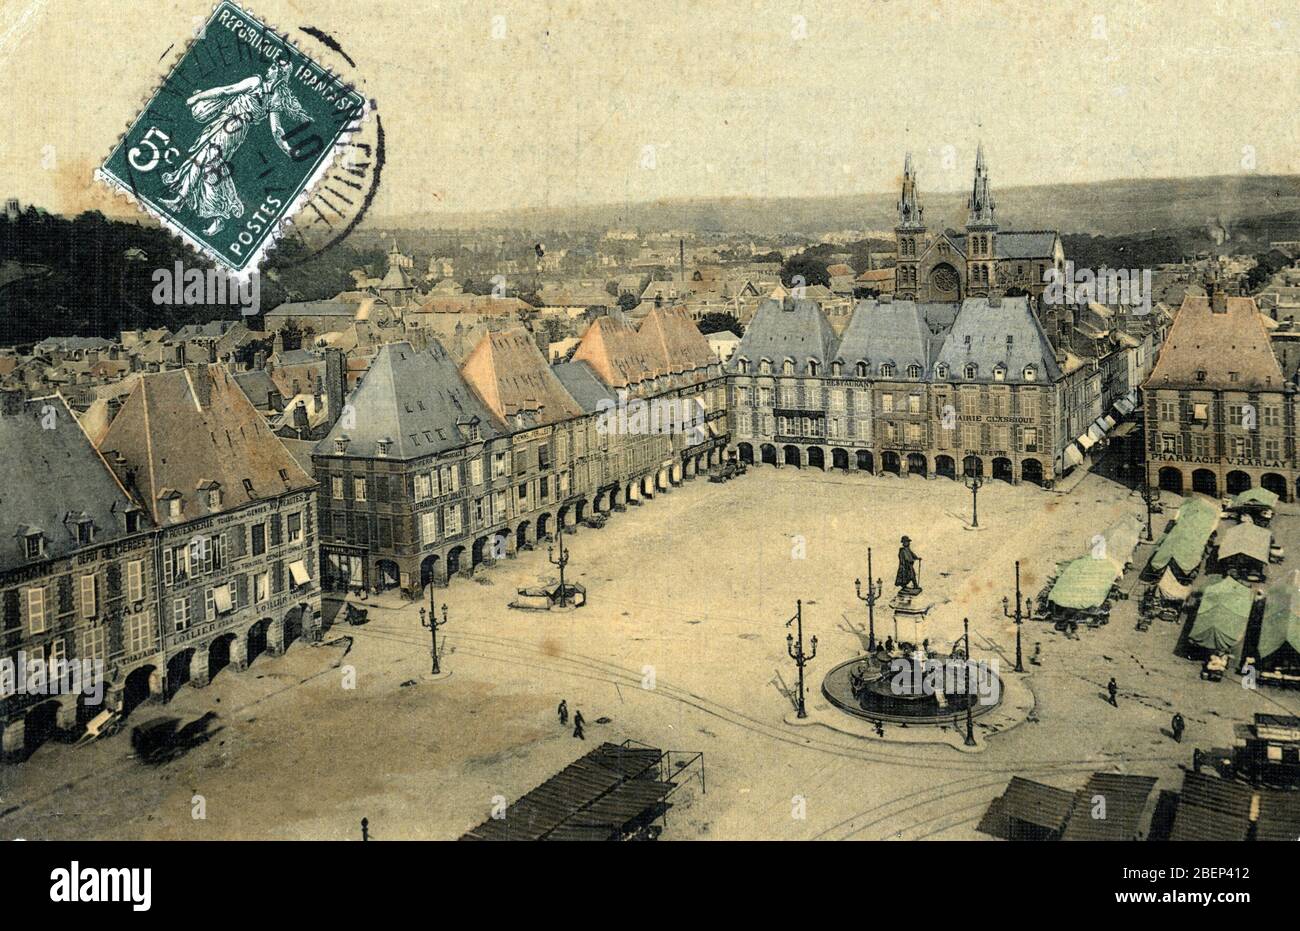 Vue sur la Place ducale de Charleville Mezieres (Charleville-Mezieres), Ardennen 1908 Carte postale Collection privee Stockfoto